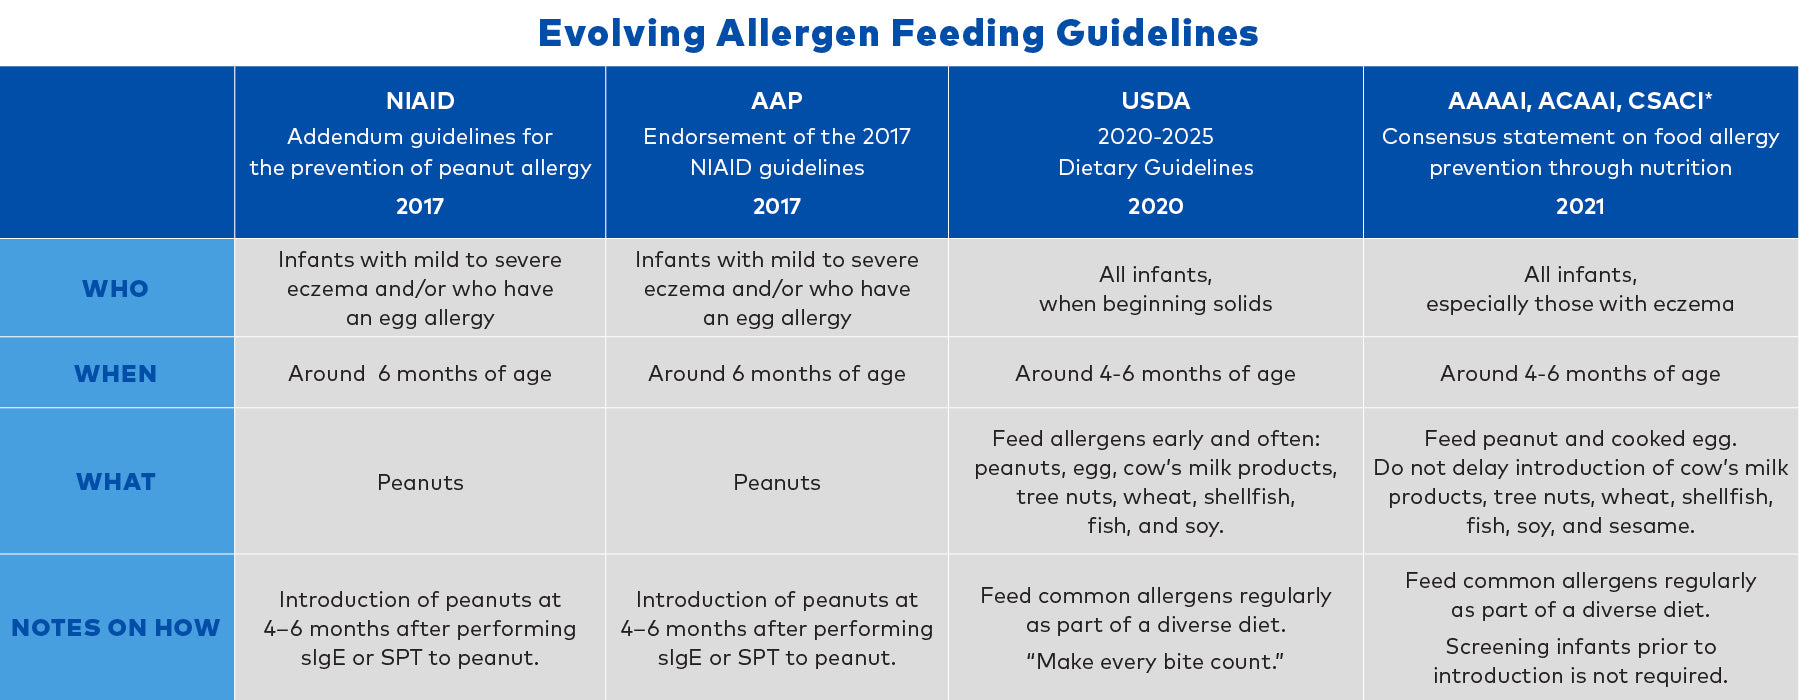 Early Allergen Feeding Guidelines 